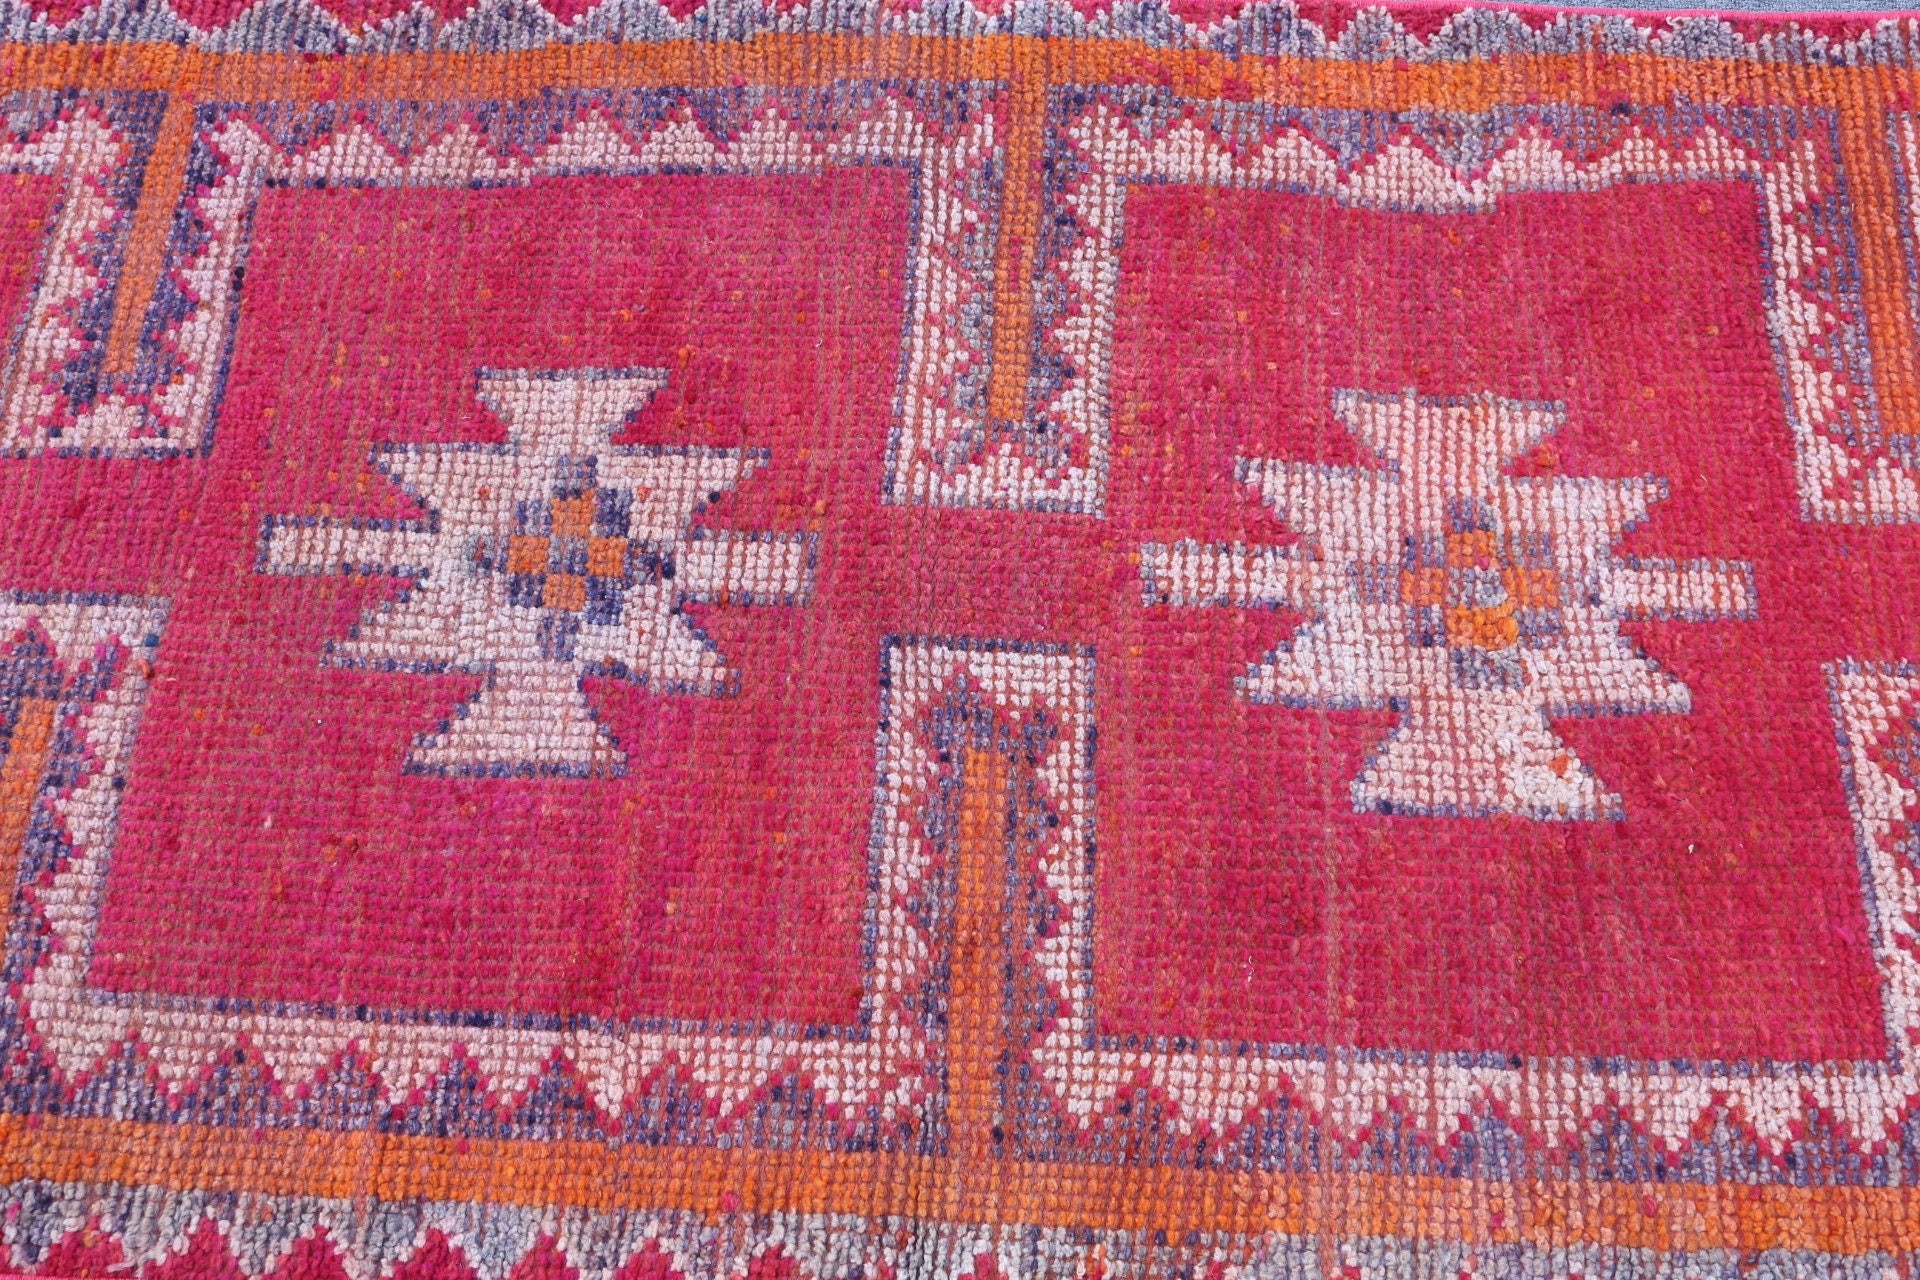 Orange Kitchen Rugs, Corridor Rug, Vintage Rug, Old Rug, Antique Rugs, Turkish Rug, Rugs for Corridor, 2.8x10.5 ft Runner Rugs, Bedroom Rug